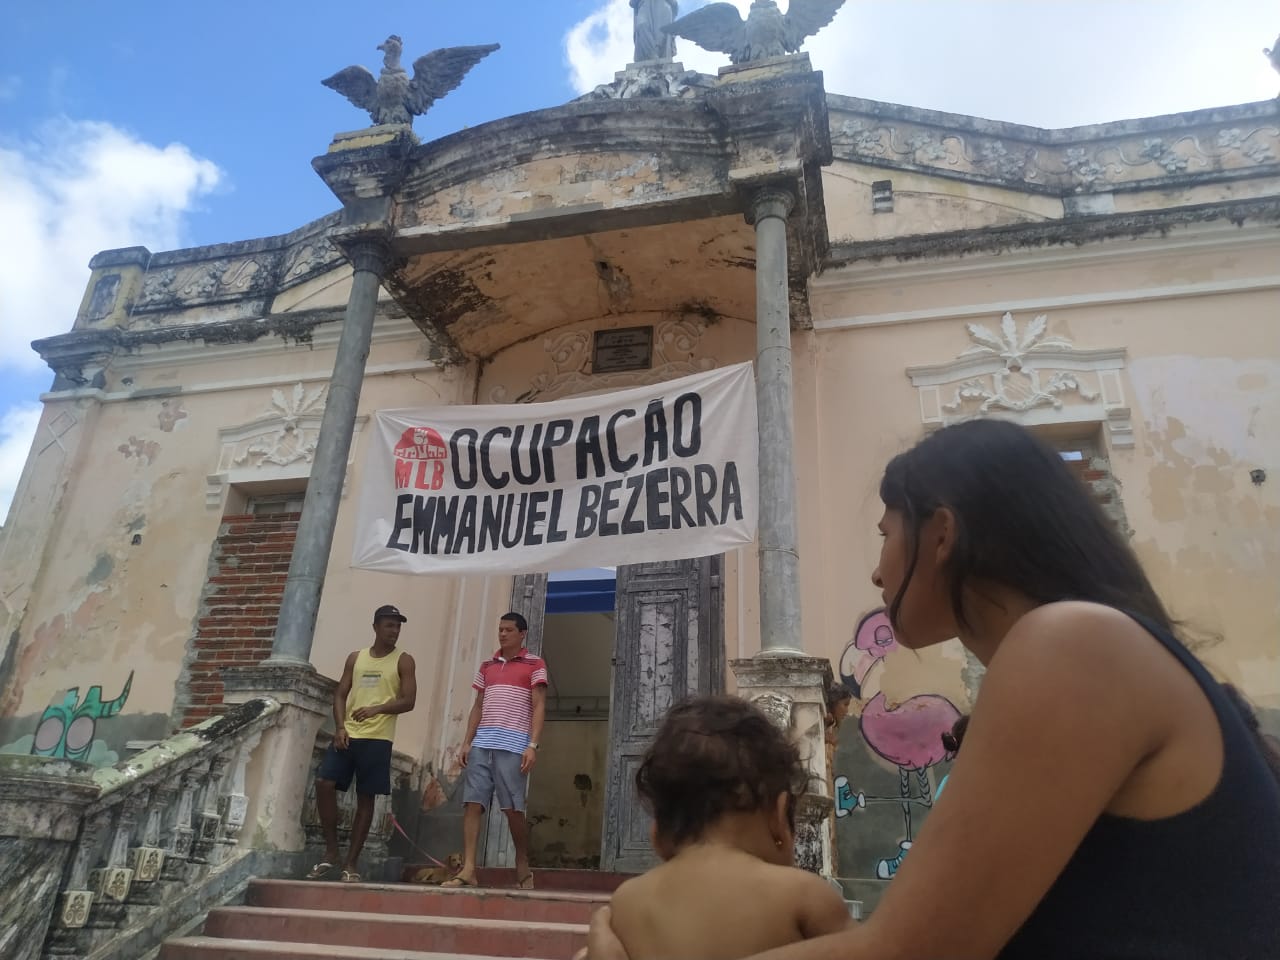 Prazo para que Prefeitura de Natal realoque famílias da ocupação Emmanuel Bezerra termina sem proposta do município